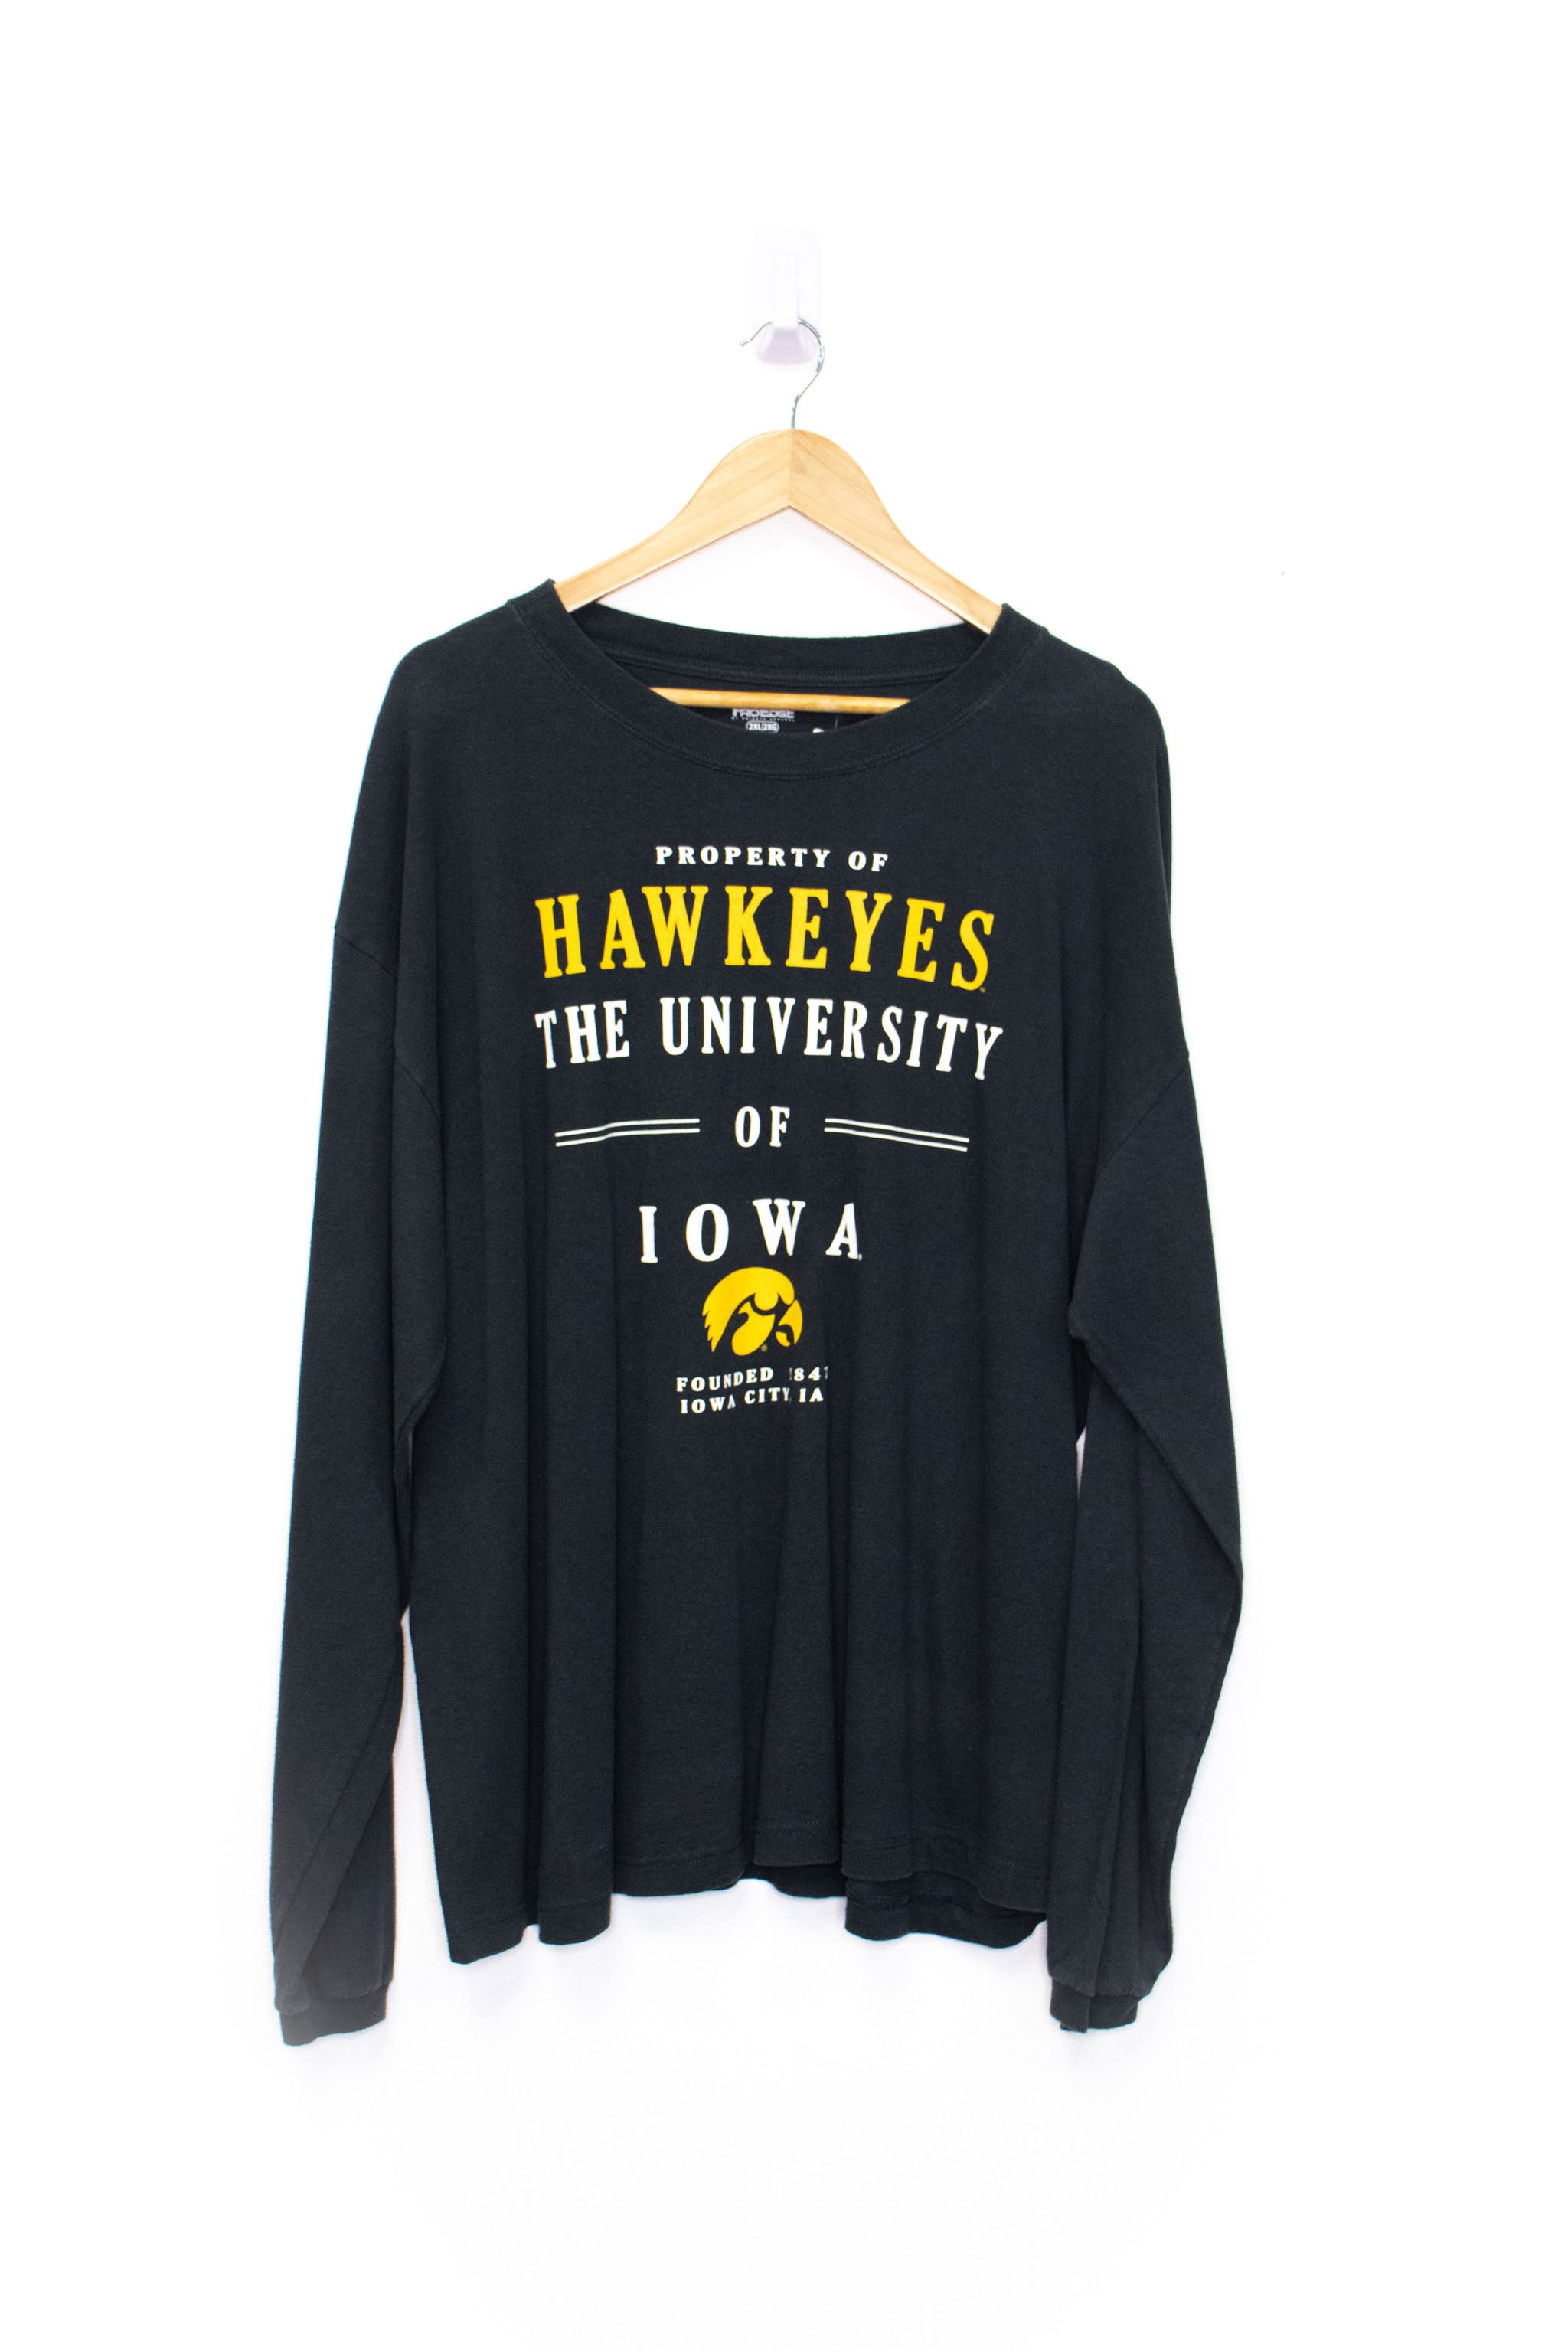 Vintage Iowa Hawkeyes Longsleeve